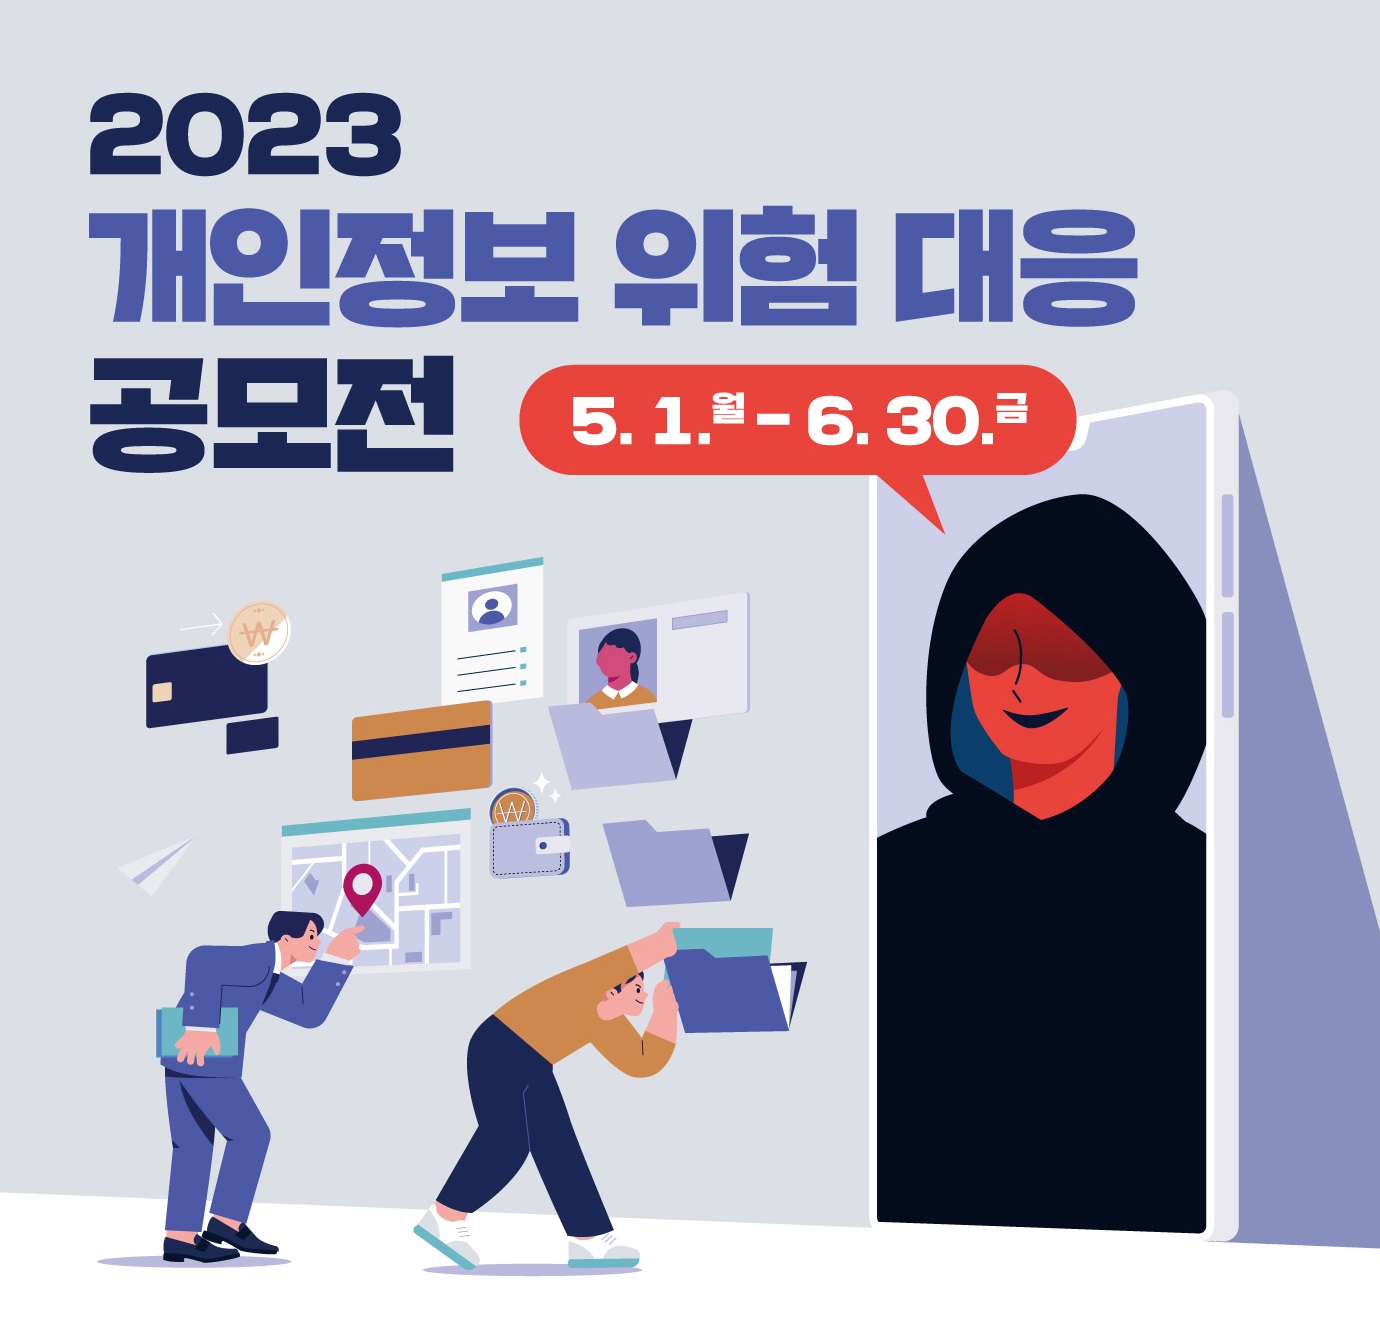 2023년 개인정보 위험 대응 공모전 5.1.월 ~ 6.30.금